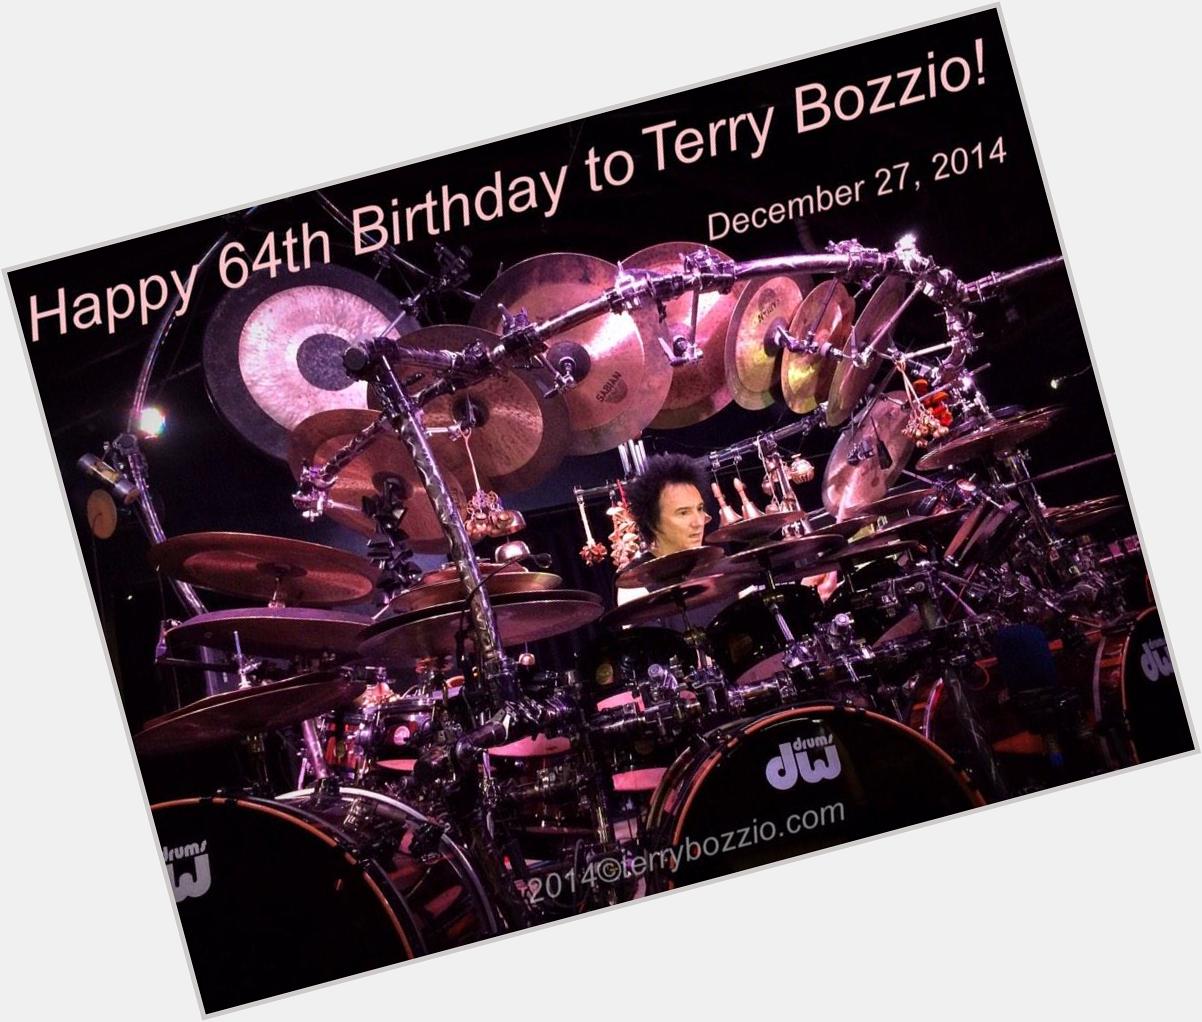 Happy Birthday to Terry Bozzio!
Terry Bozzio was born 27 December 1950. 